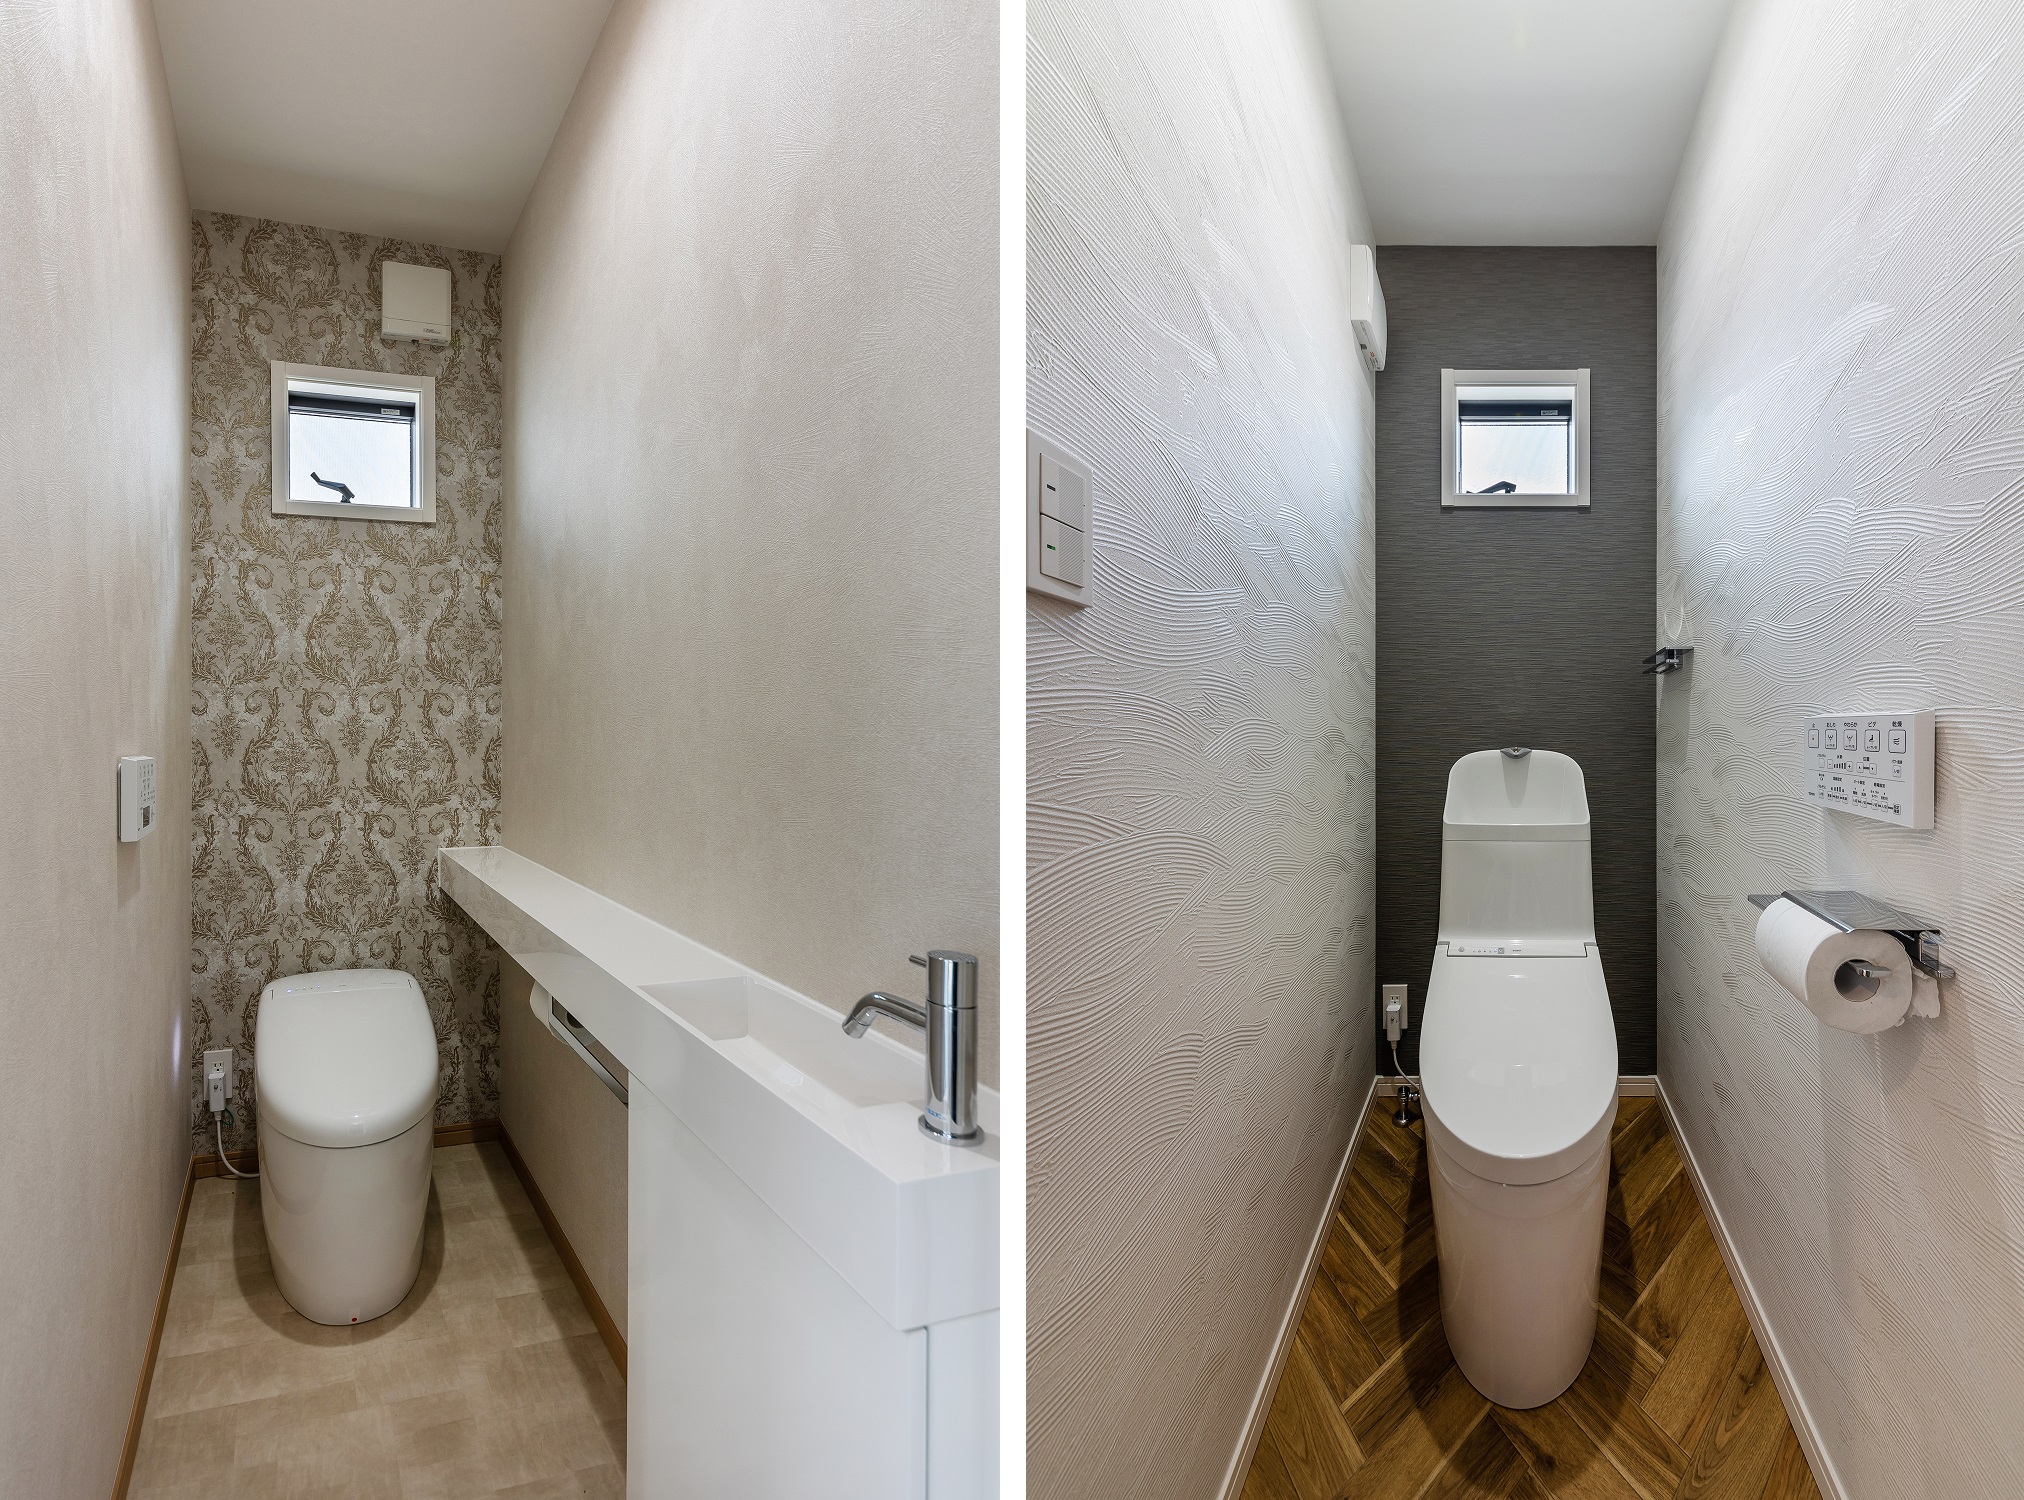 2ヶ所あるトイレは、ダマスク柄のアクセントクロスを使用しエレガントさを感じさせるデザインと、ヘリンボーン床とモノトーンのカラーがオシャレなデザインに仕上げました。<br />
どちらも施主様のこだわりを感じることができる空間となりました。